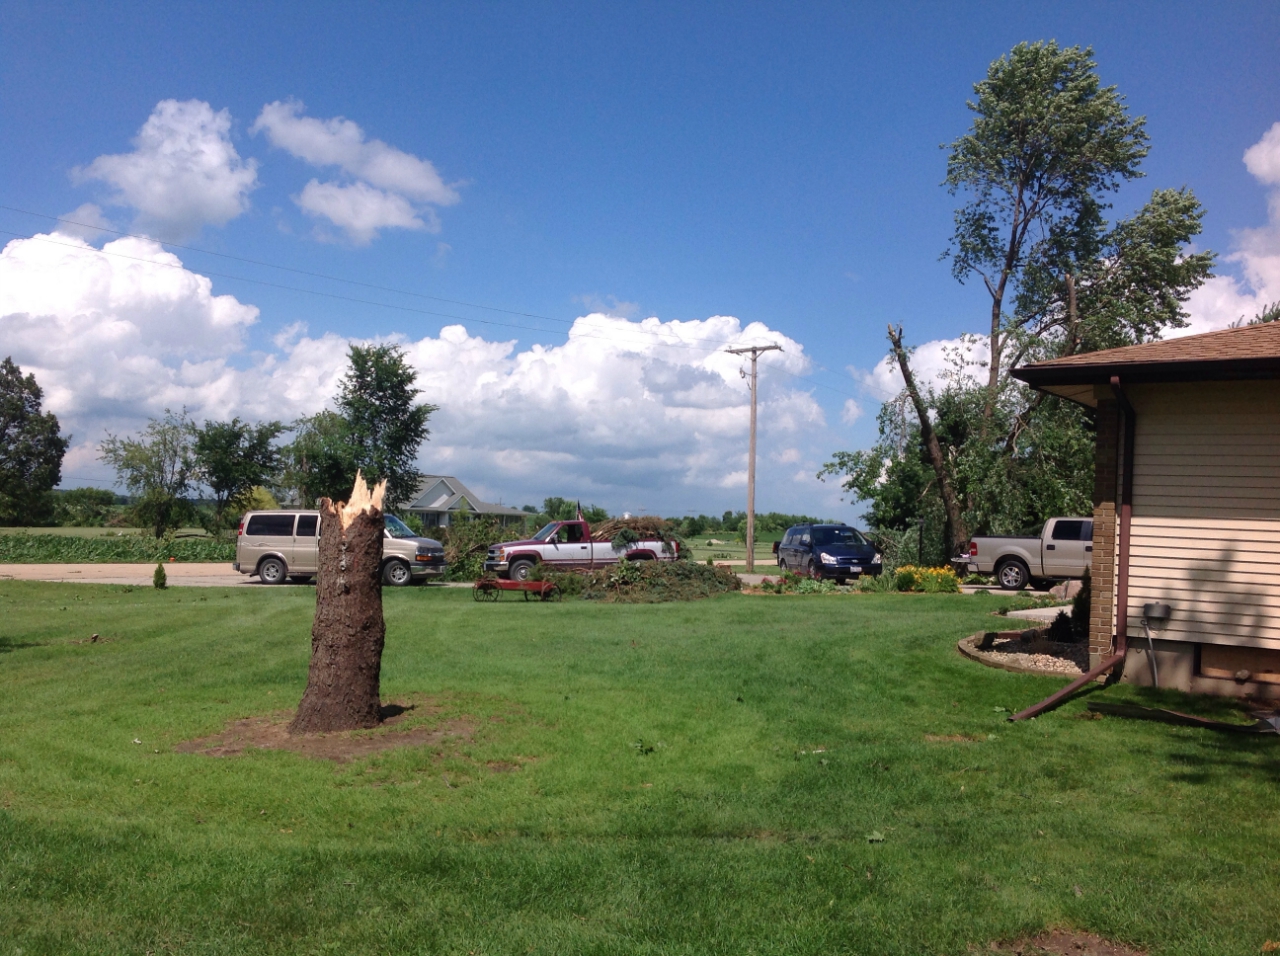 Tree damage 1 mile ENE Earlville